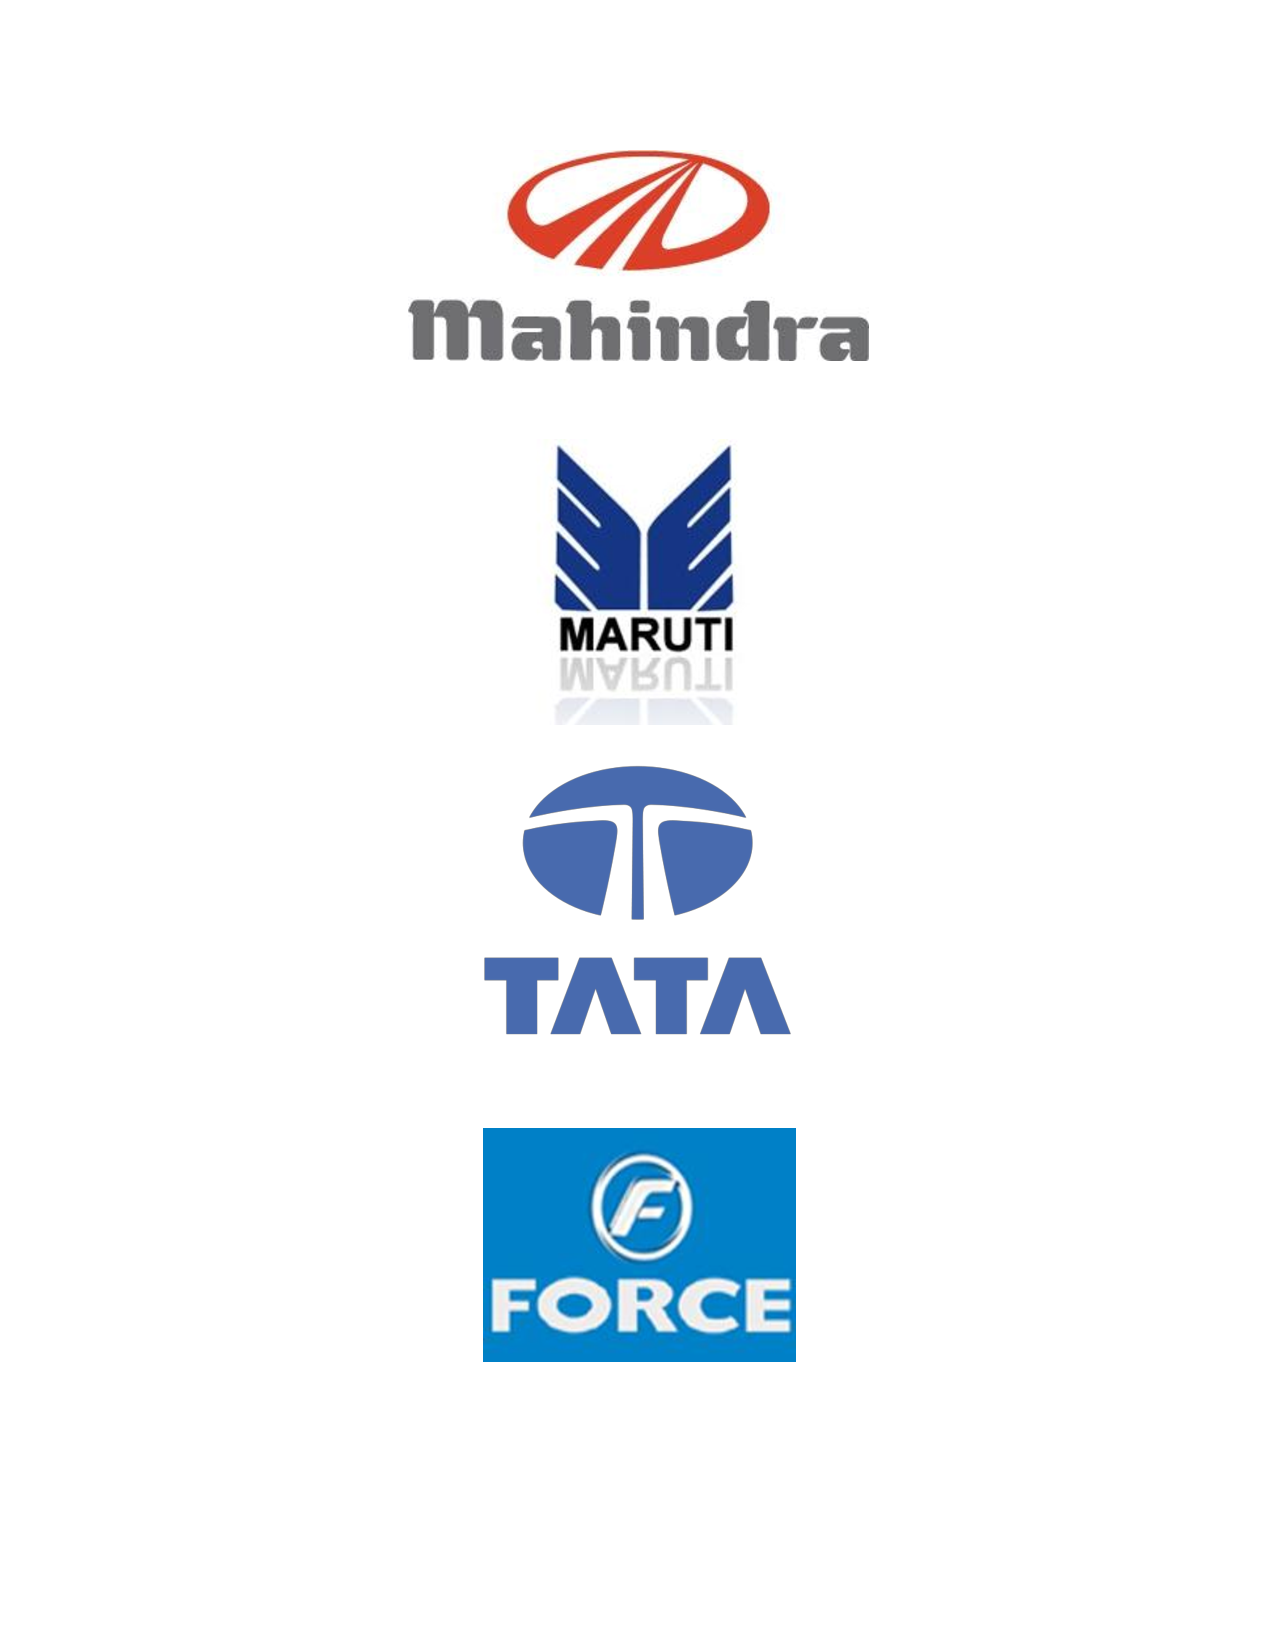 Three pics of car company logos